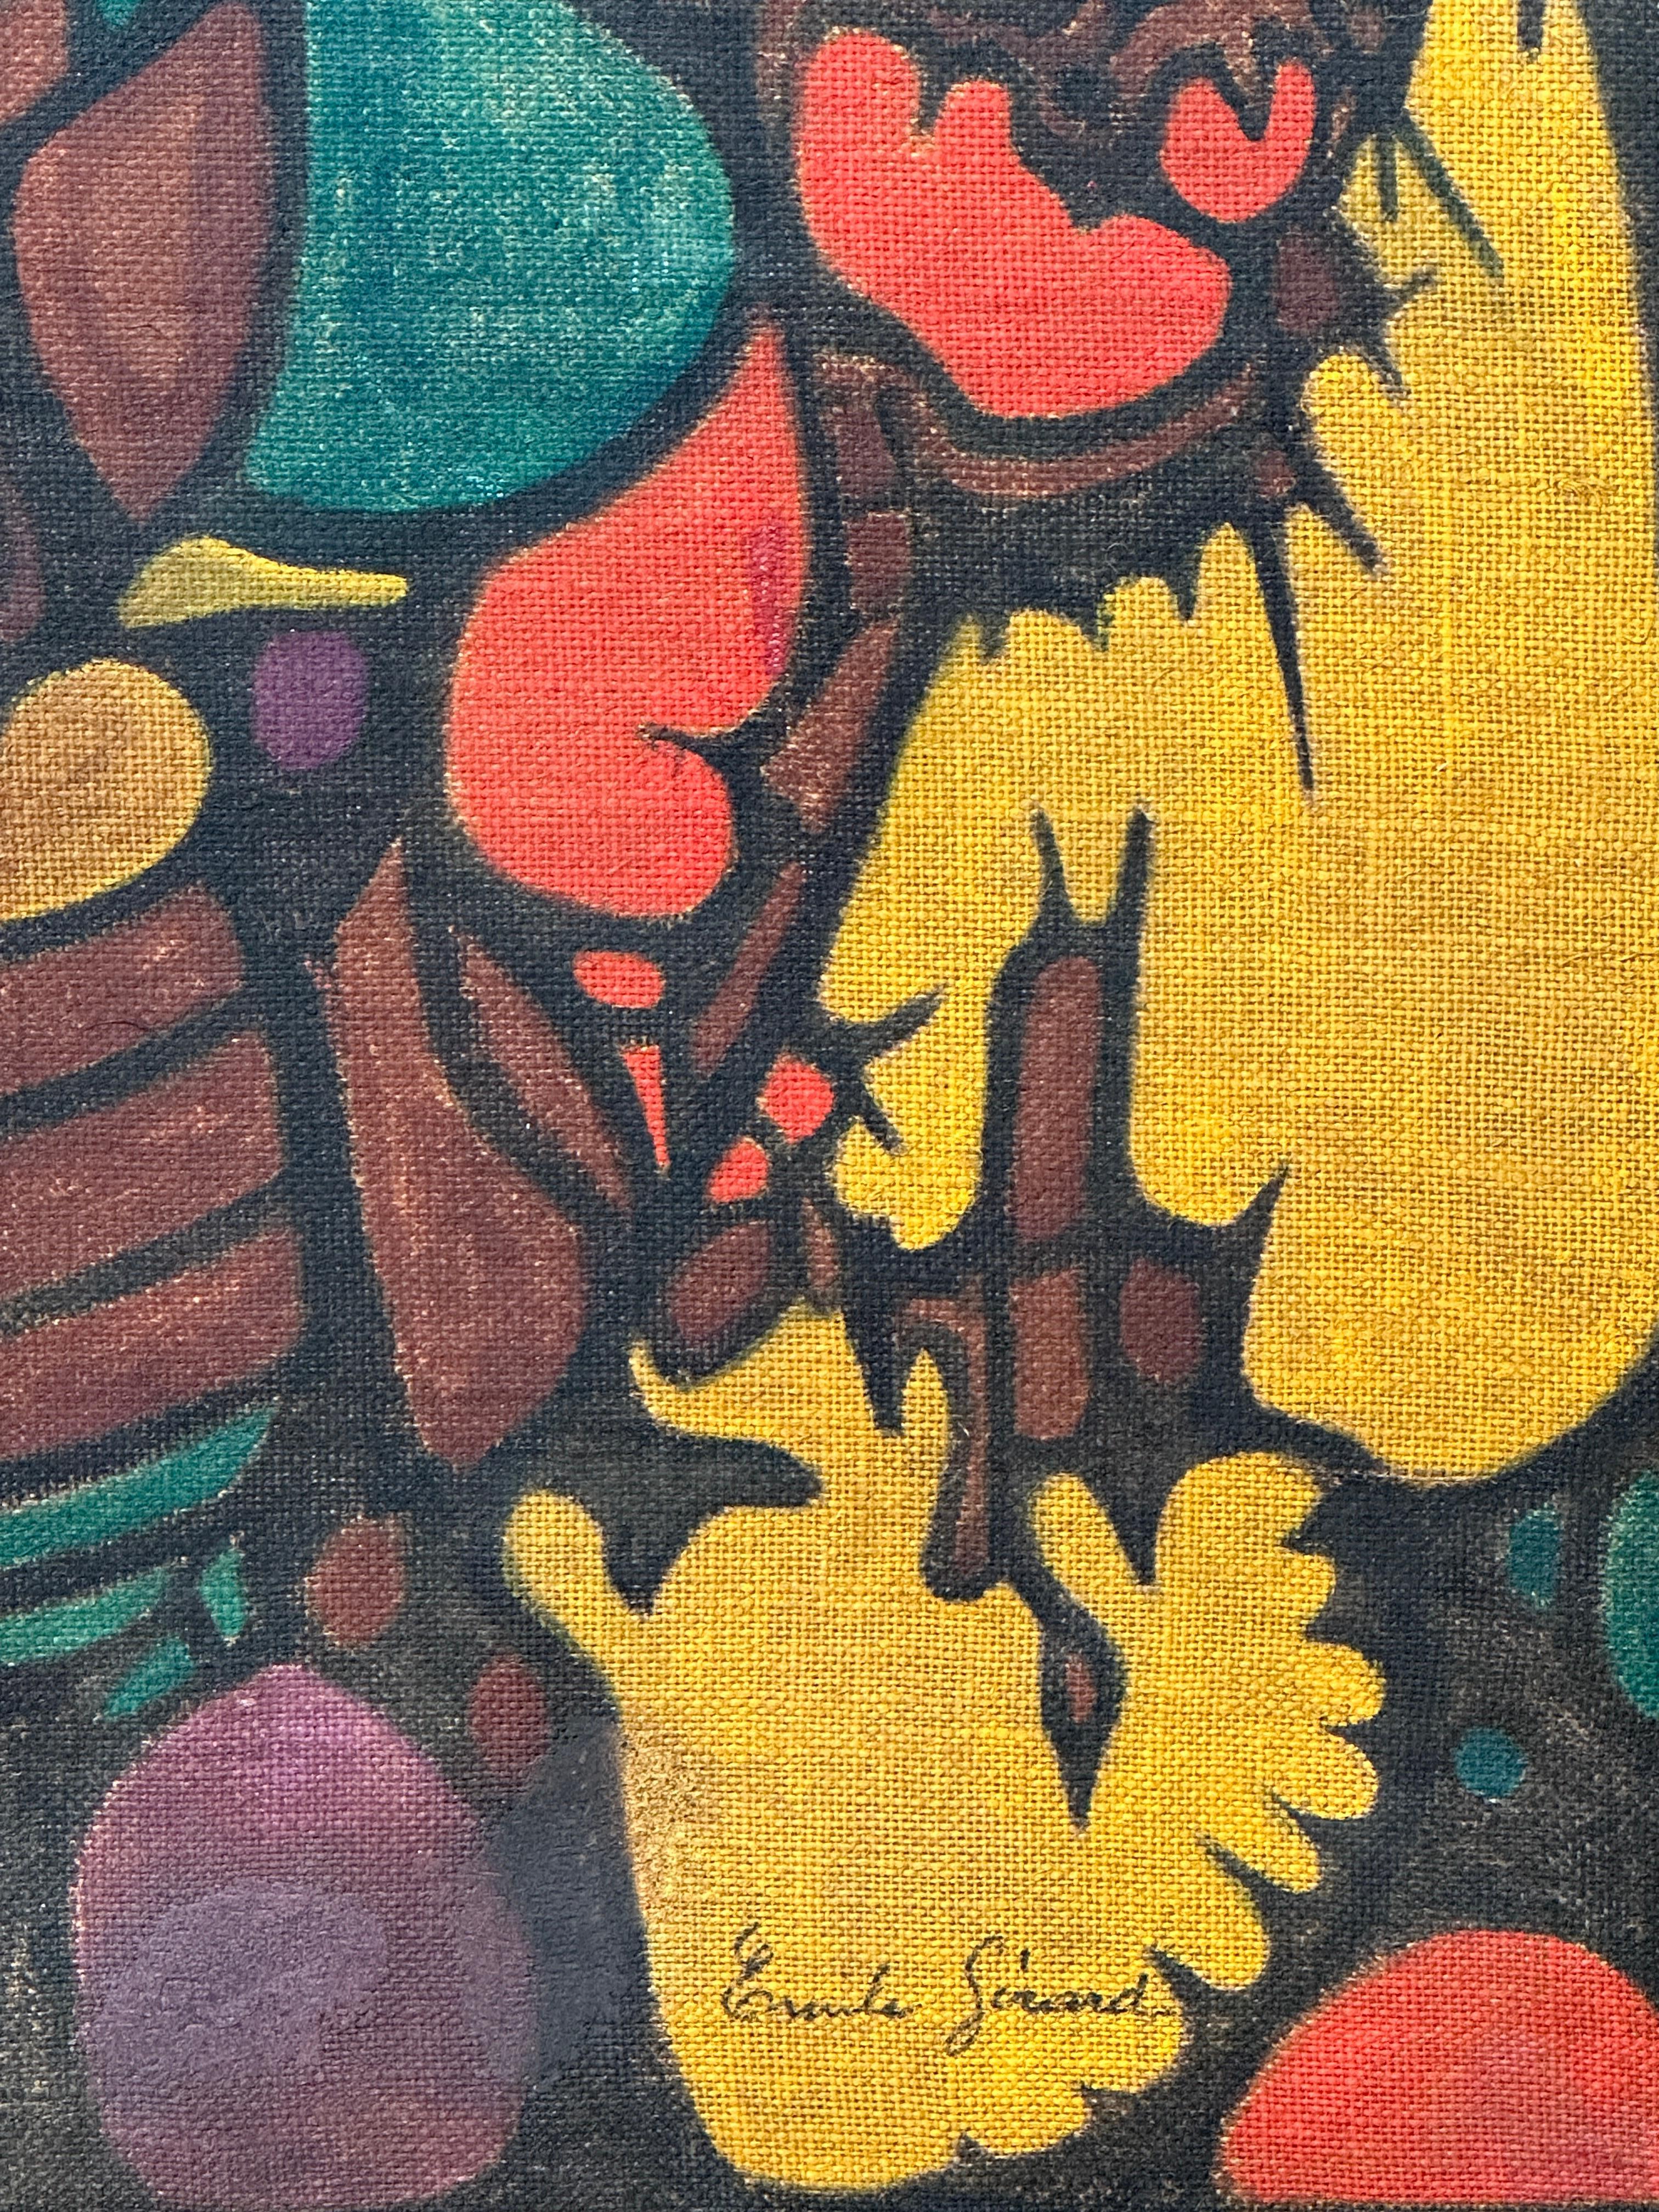 Bunte abstrakte Gouache auf Sackleinen des französischen Malers Emile Gerard (Abstrakter Expressionismus), Painting, von Émile Gérard